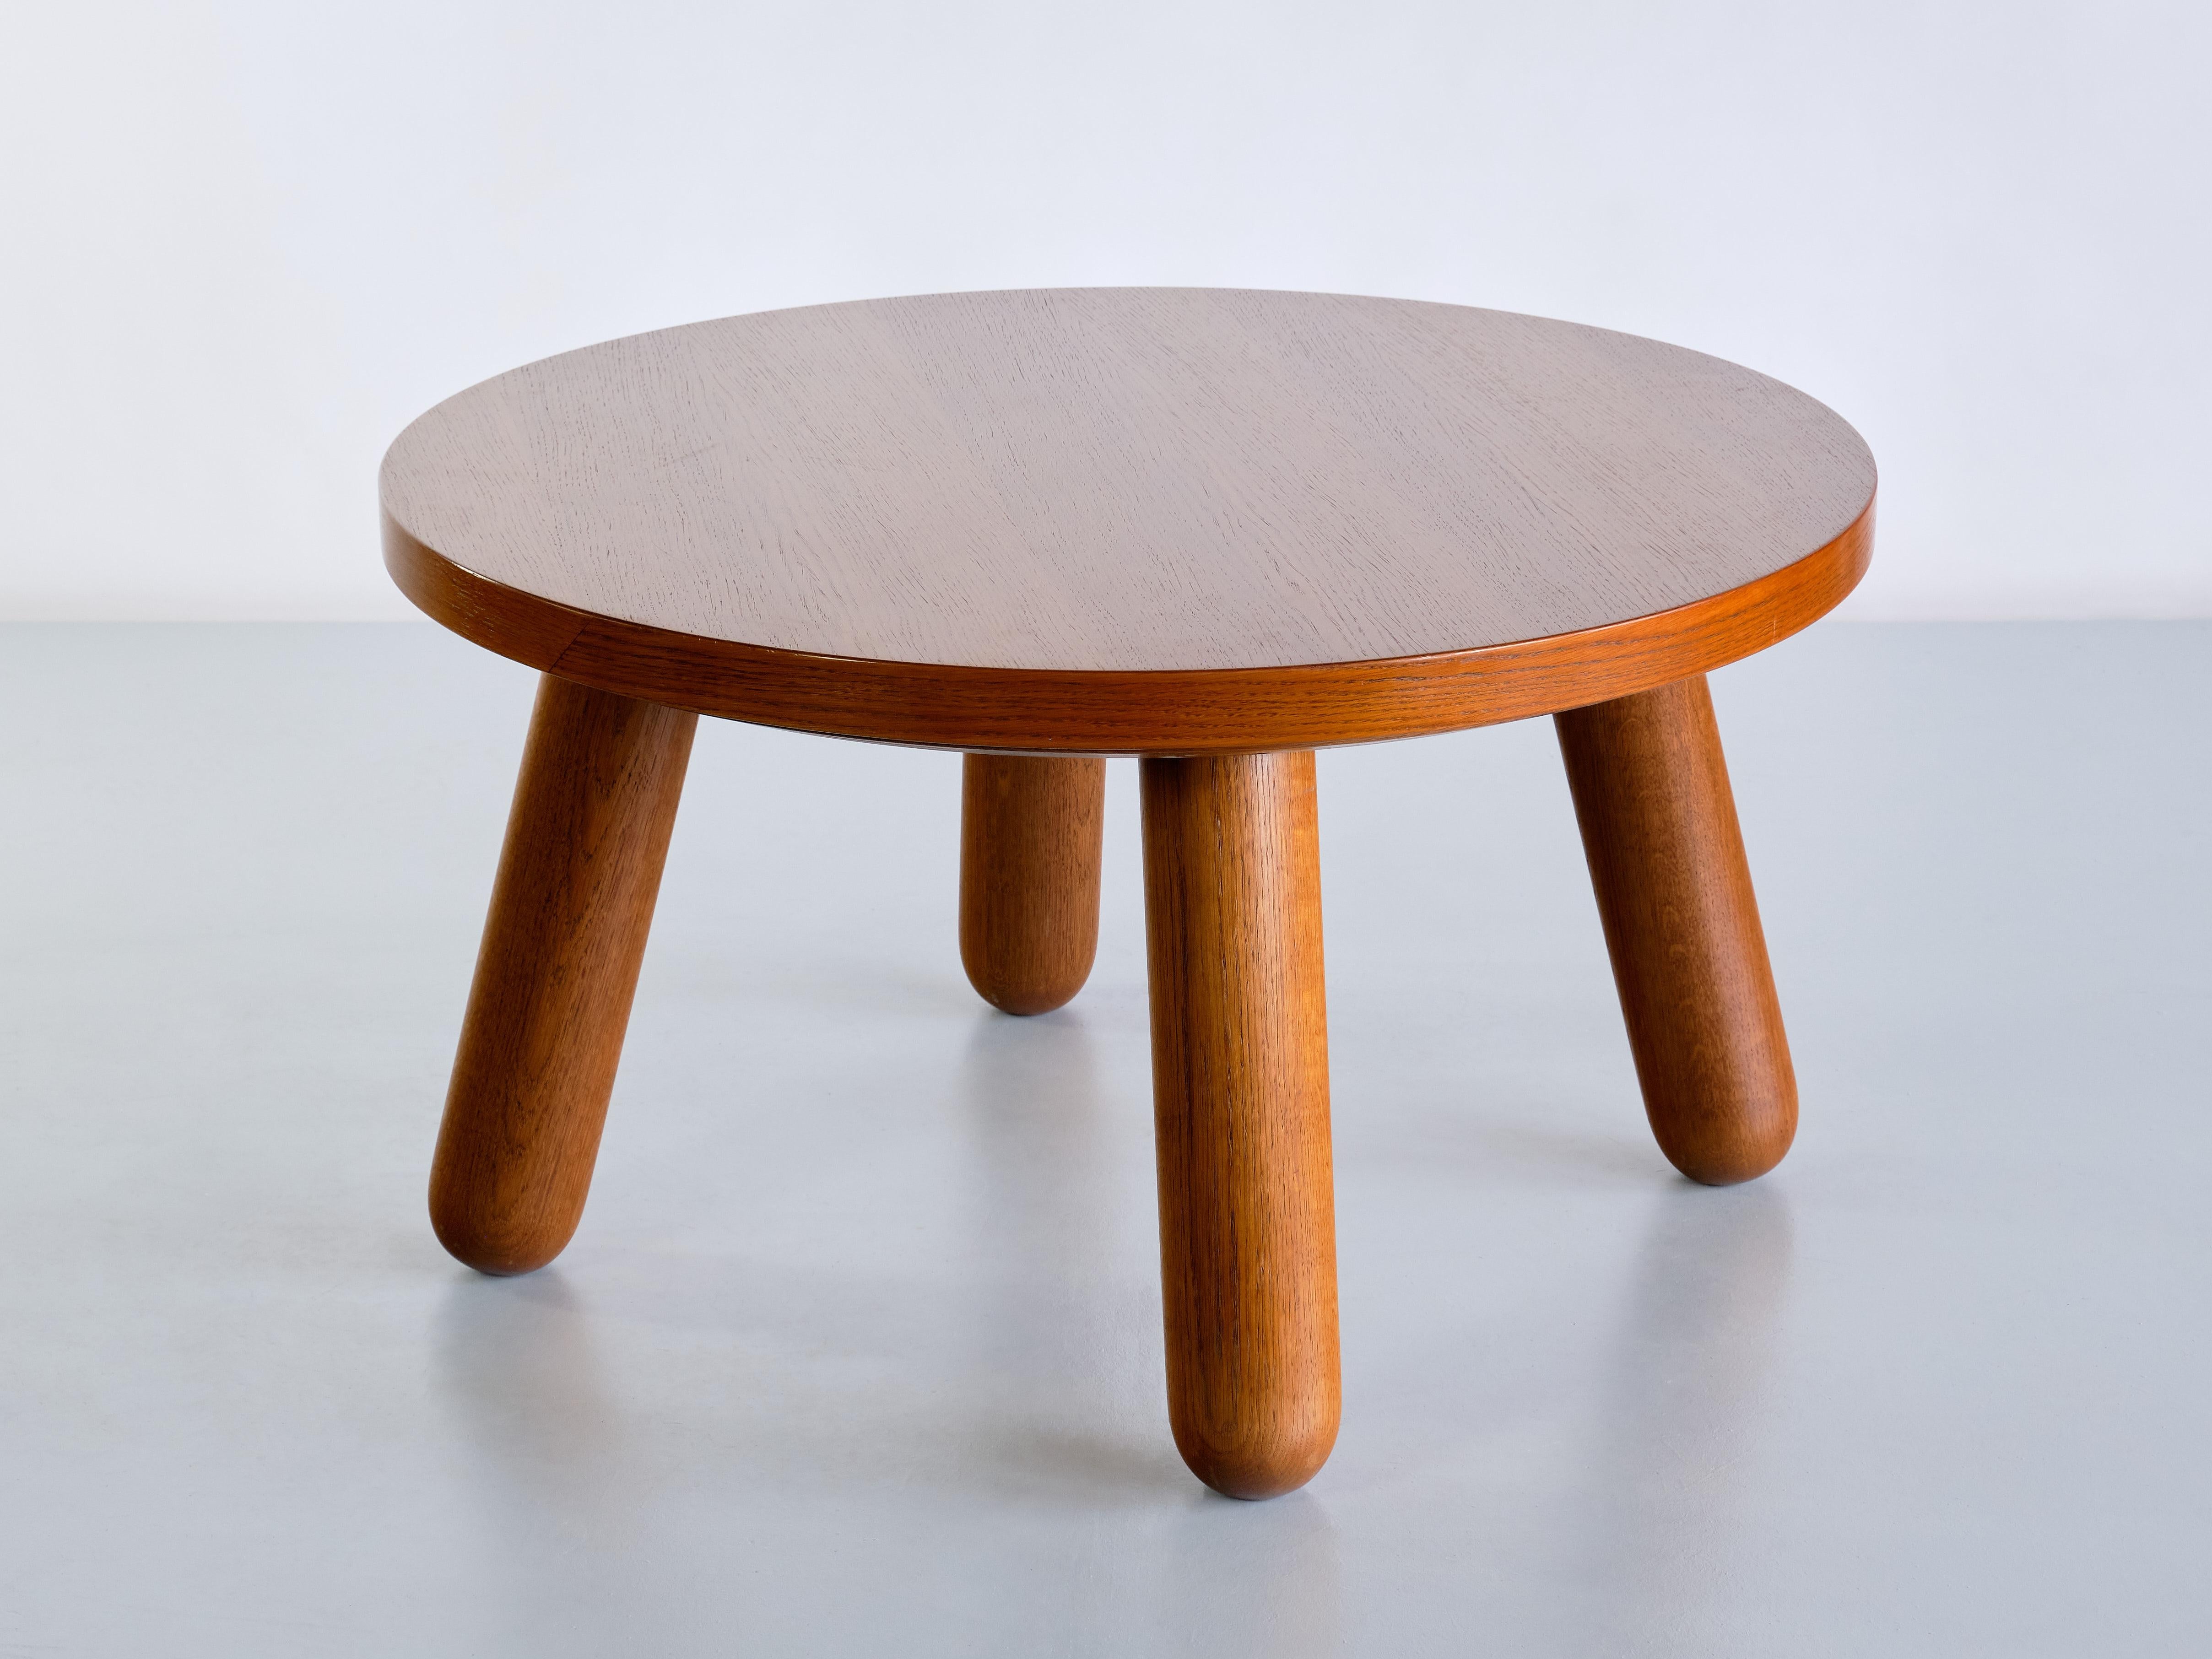 Cette table basse très rare a été conçue et fabriquée par l'ébéniste Otto Færge au Danemark dans les années 1940. La table ronde avec un plateau en bois de chêne plaqué, présentant un grain de bois distinct et attrayant. Les pieds en forme de club,